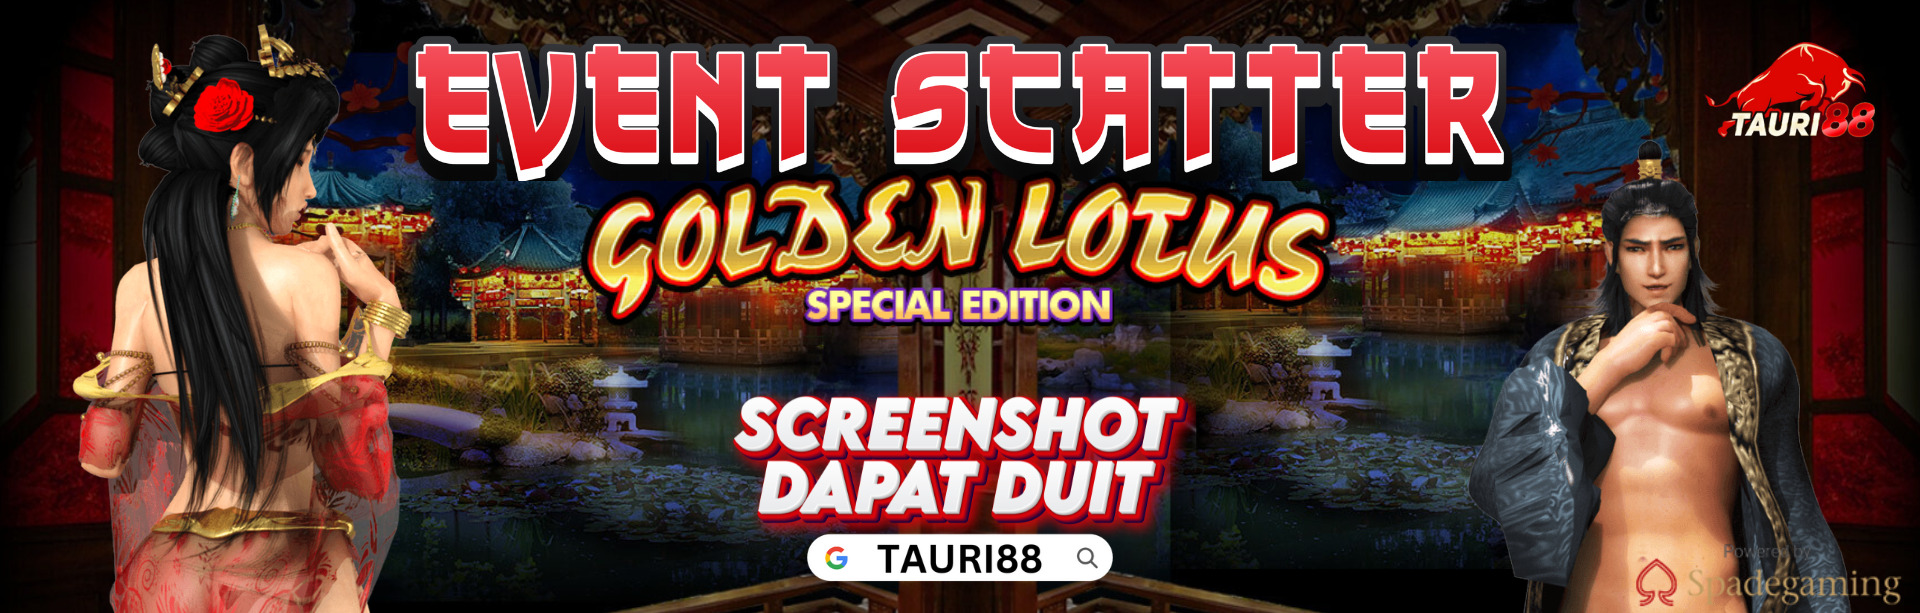 Event Scatter Golden Lotus SE